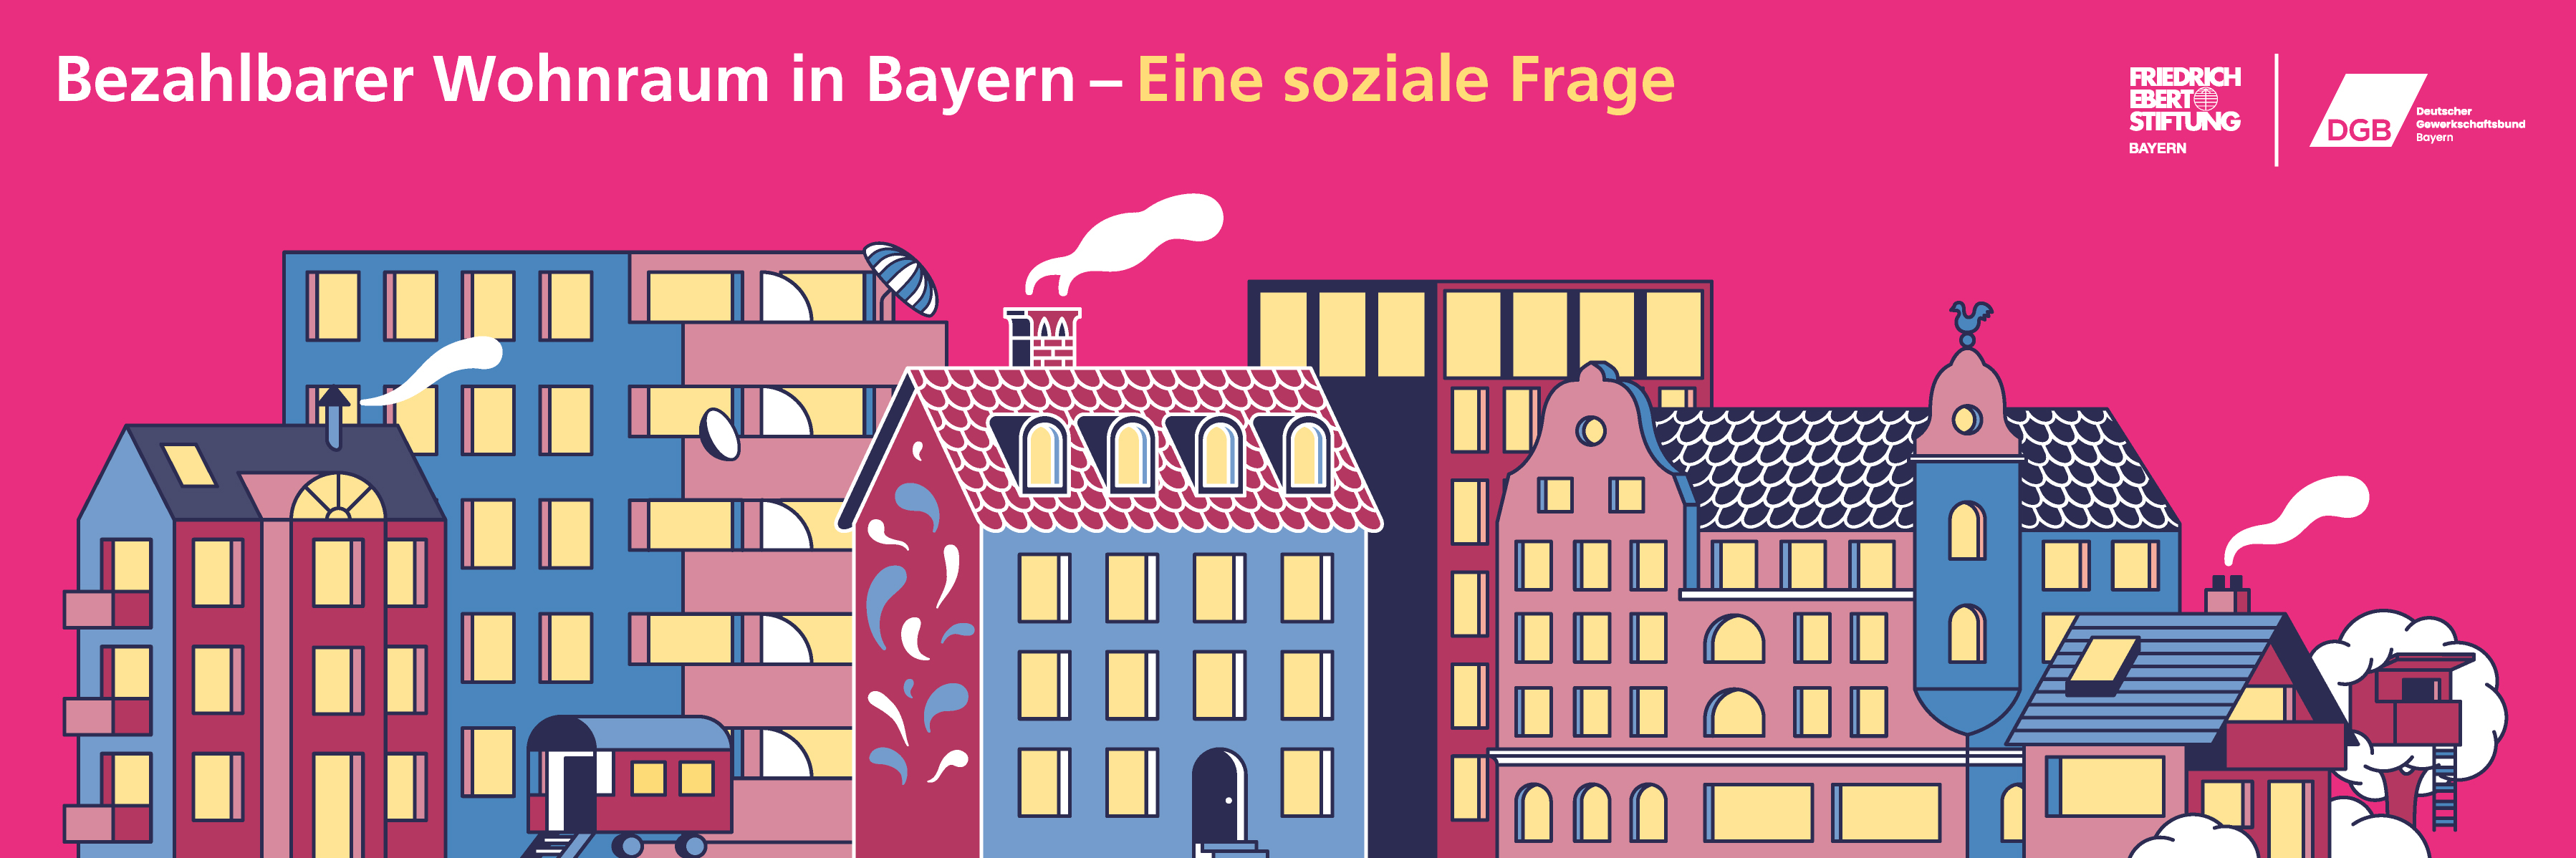 Banner der Ausstellung: Bezahlbarer Wohnraum in Bayern - Eine soziale Frage.